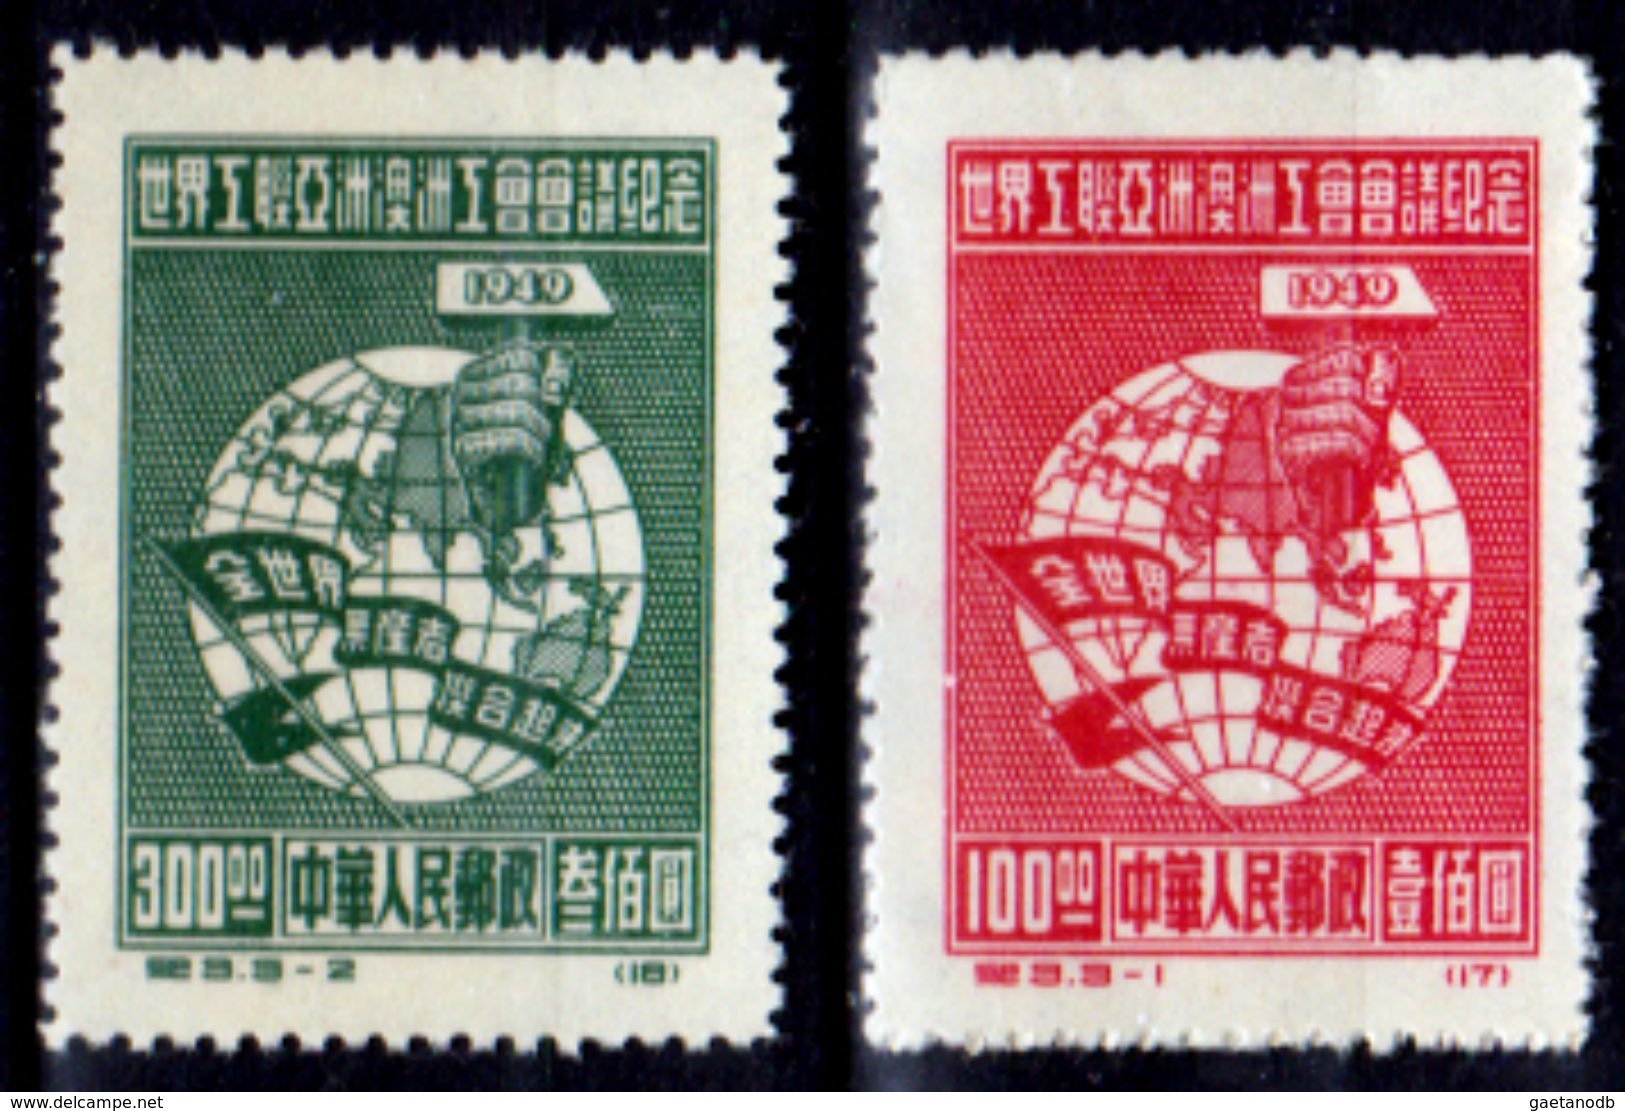 Cina-A-0101 - 1949 - Senza Difetti Occulti. - Officiële Herdrukken